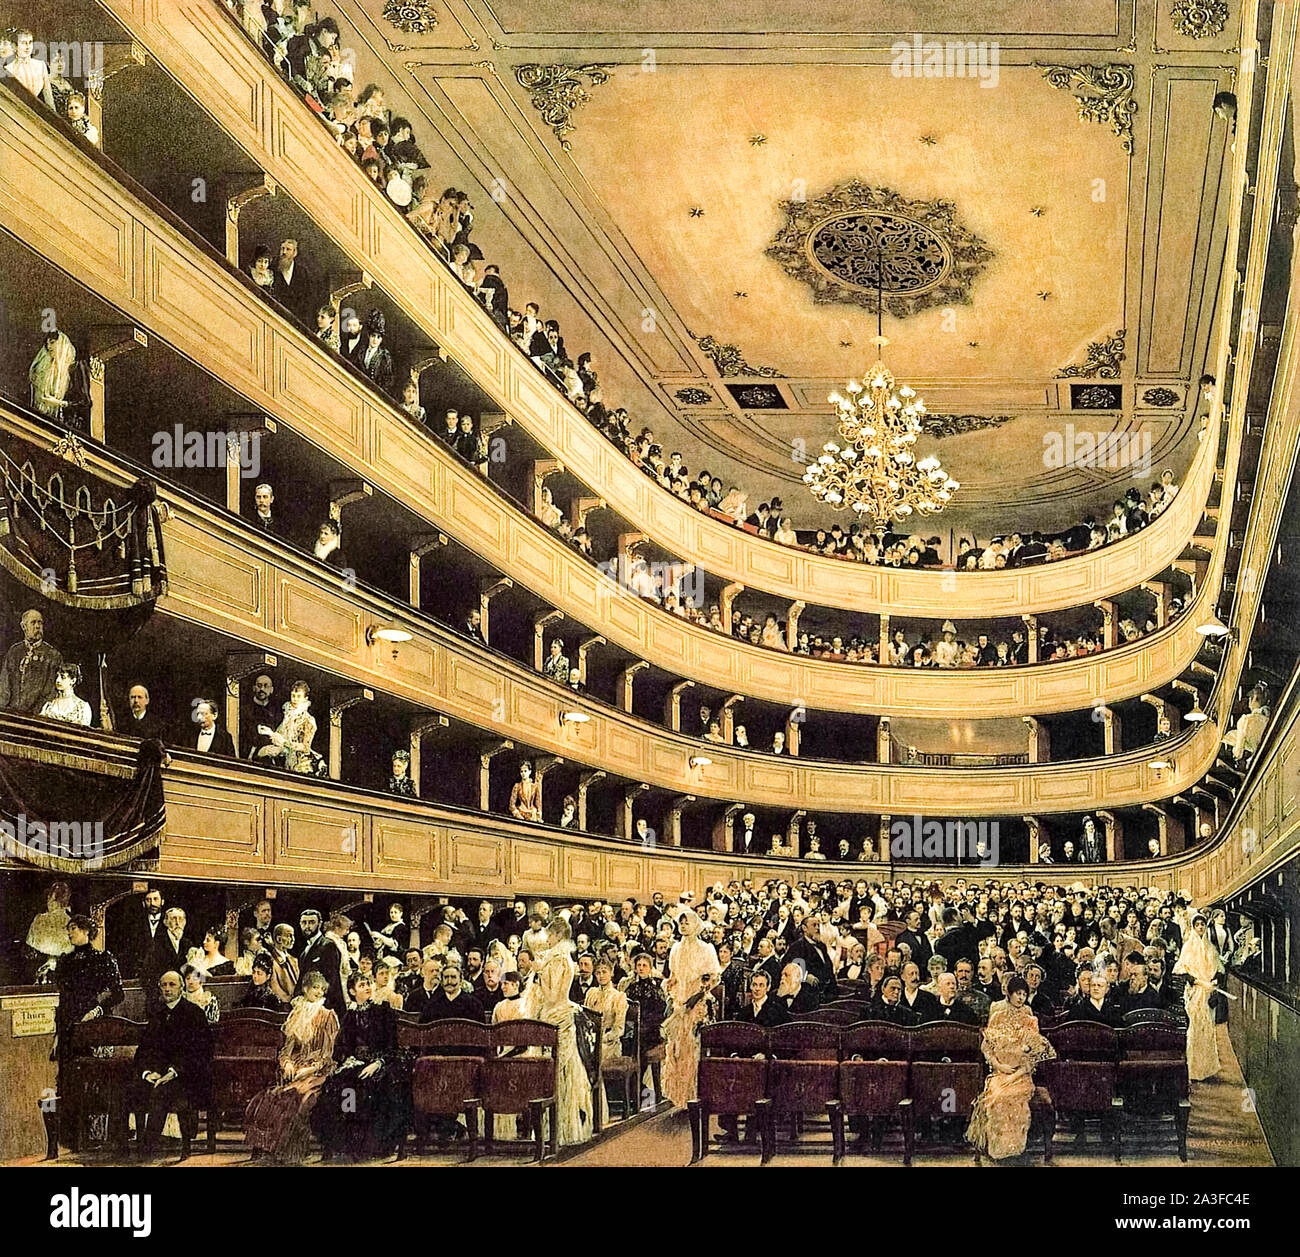 Auditorium de l'ancien Burgtheater, Vienne (1888) par Gustave Klimt (1862-1918) peintre autrichien. Gouache étude de l'édifice original attaché à la Hofburg à Michaelerplatz avant son transfert en 1888. Banque D'Images